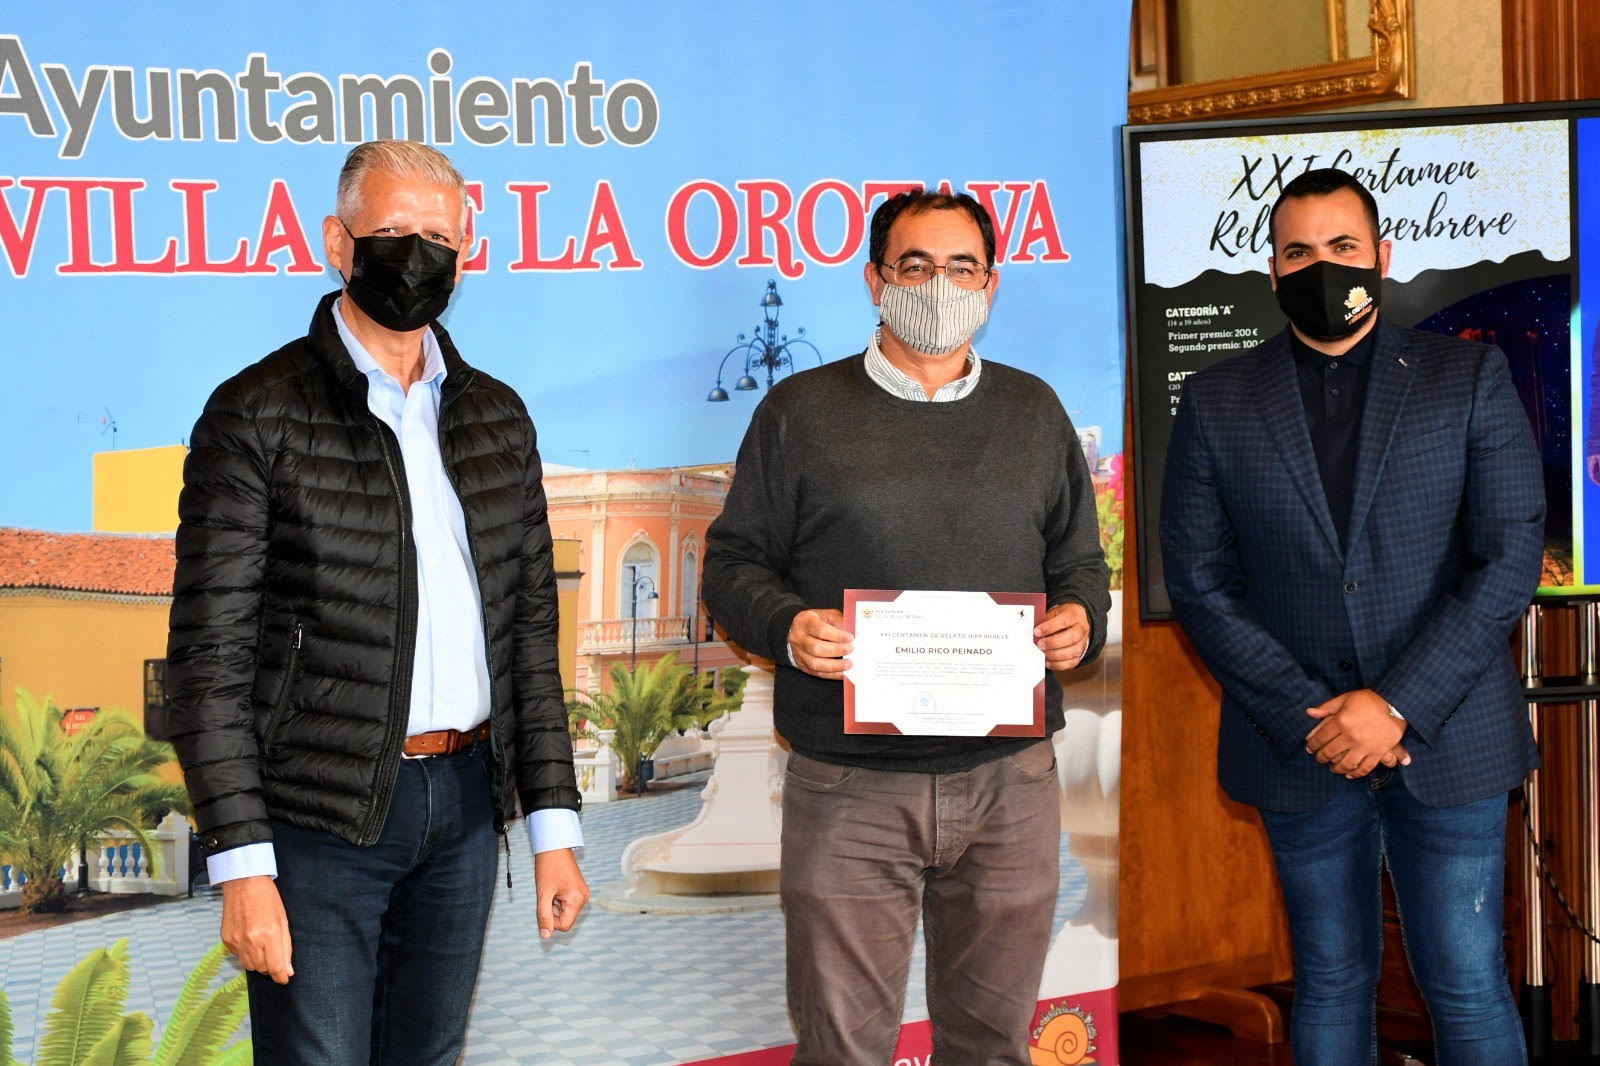 El alcalde de La Orotava, Francisco Linares, y el concejal de Juventud del consistorio villero, Darío Afonso, fueron los encargados de entregar los galardones